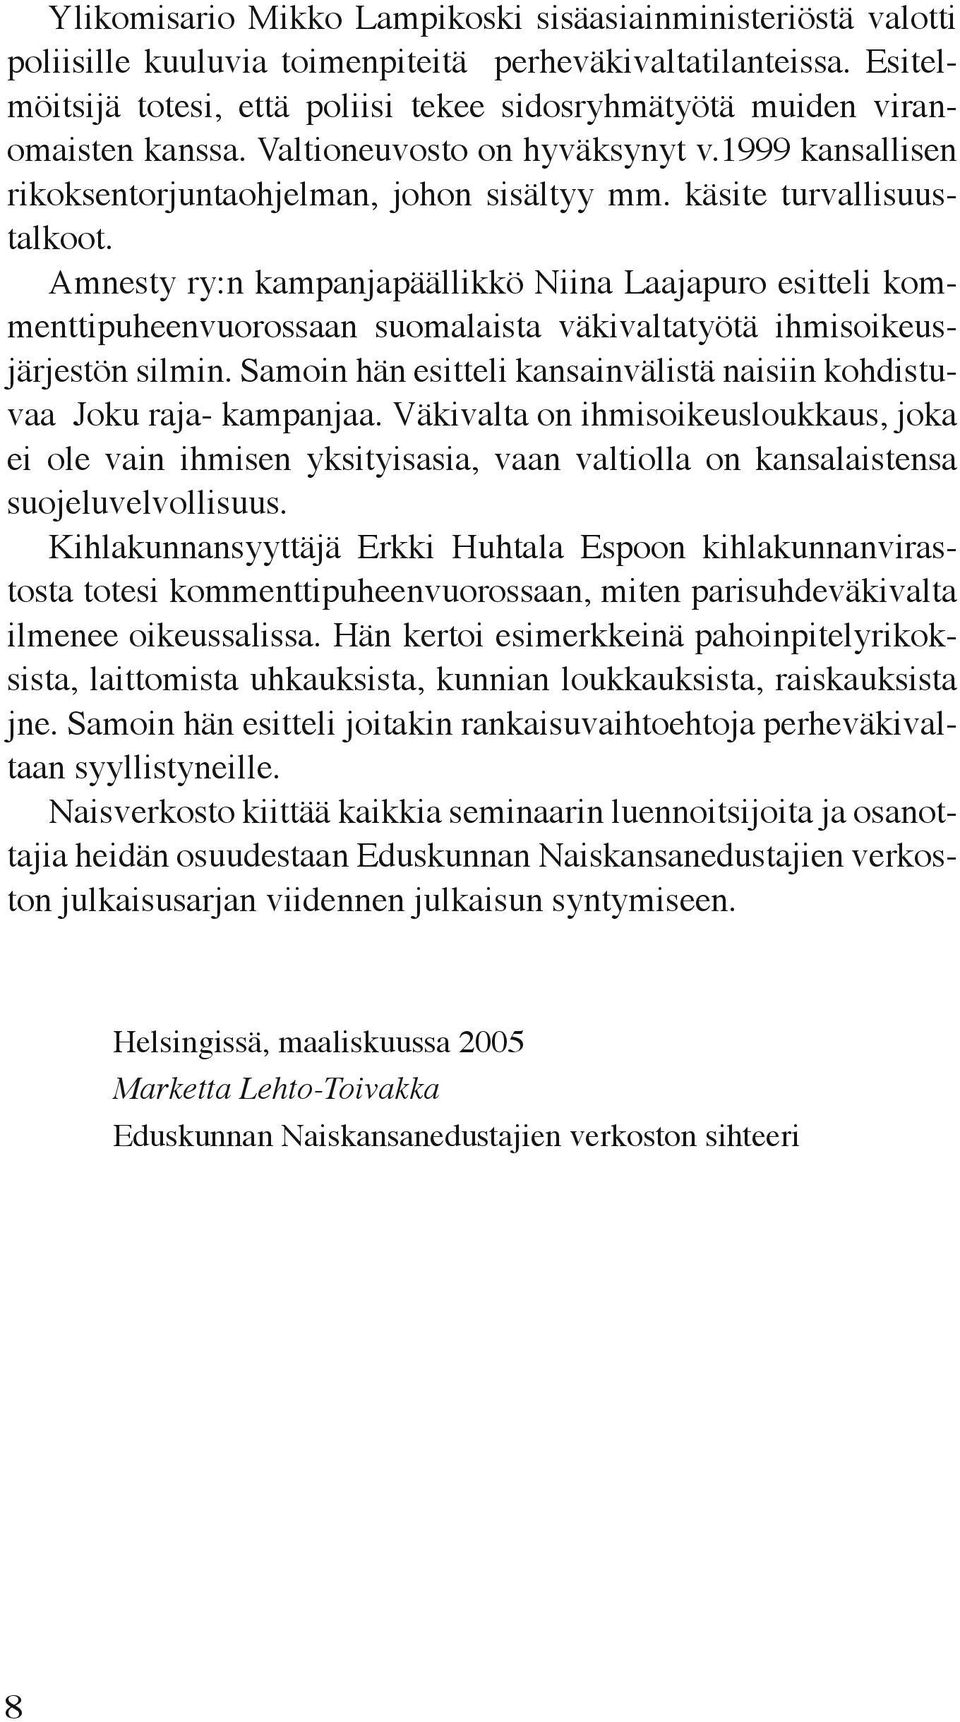 käsite turvallisuustalkoot. Amnesty ry:n kampanjapäällikkö Niina Laajapuro esitteli kommenttipuheenvuorossaan suomalaista väkivaltatyötä ihmisoikeusjärjestön silmin.